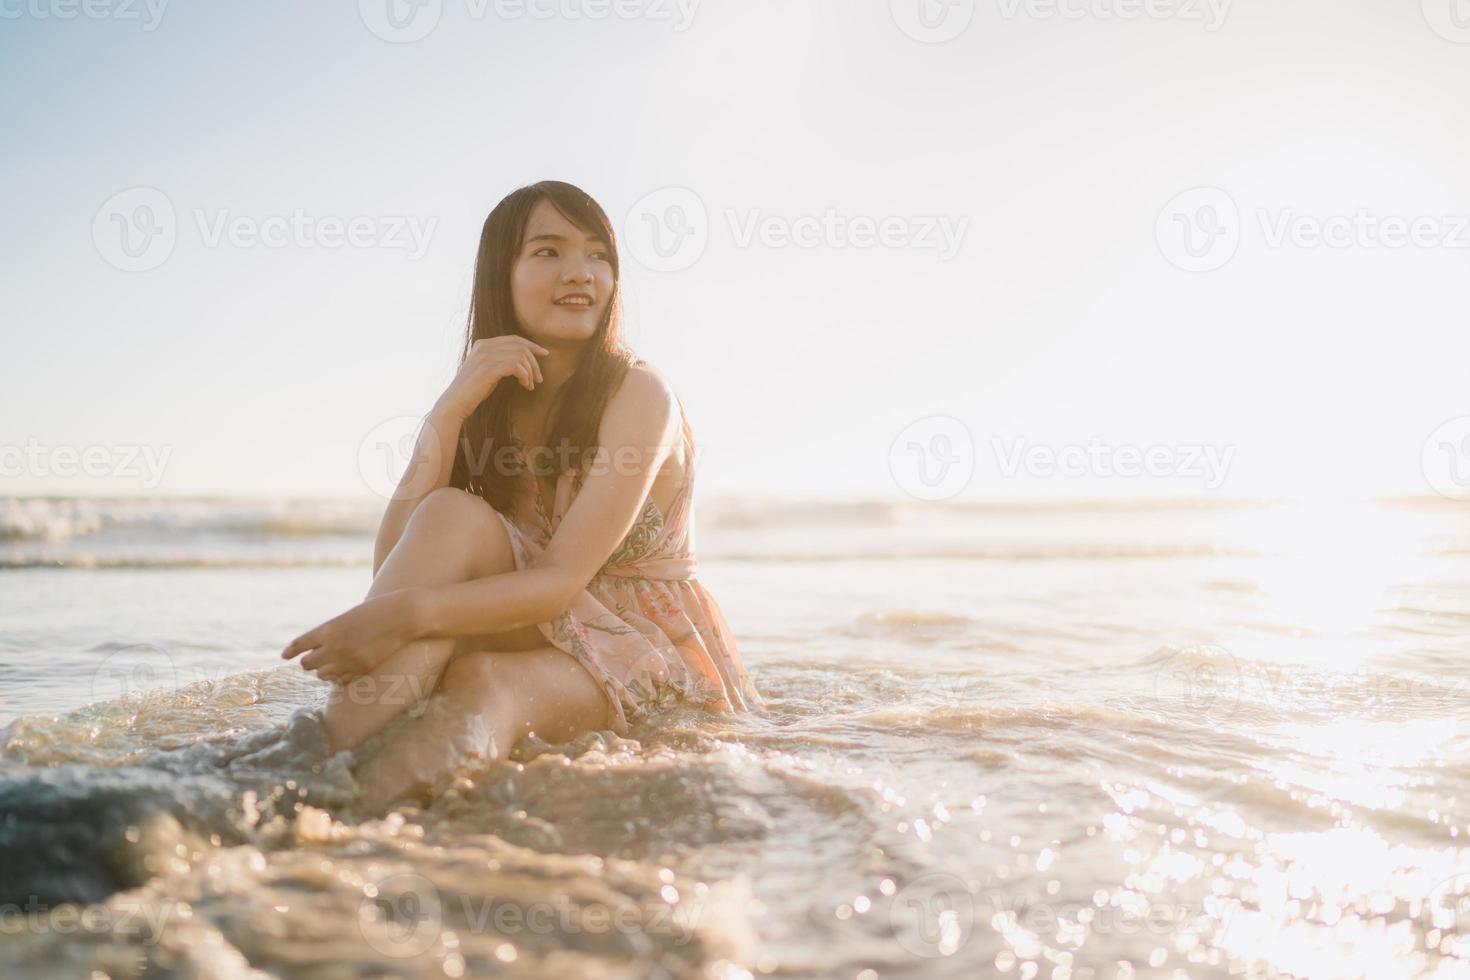 jeune femme asiatique se sentant heureuse sur la plage, belle femme heureuse se détendre souriant amusant sur la plage près de la mer au coucher du soleil le soir. les femmes de style de vie voyagent sur le concept de plage. photo